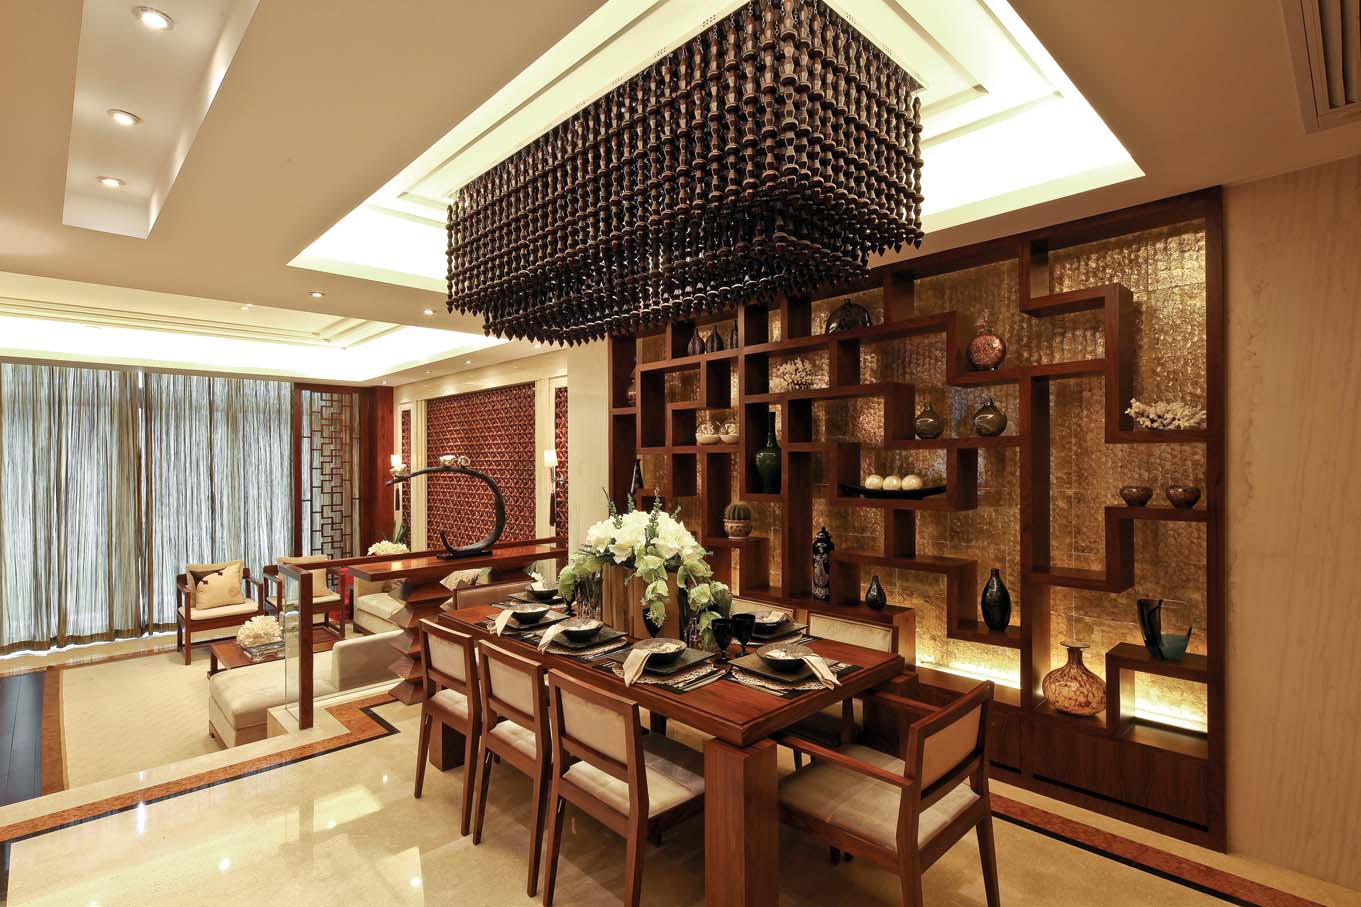 新中式 中式风格 室内设计 装修风格 装修设计 餐厅图片来自别墅装修设计yan在新中式风格首创国际半岛的分享